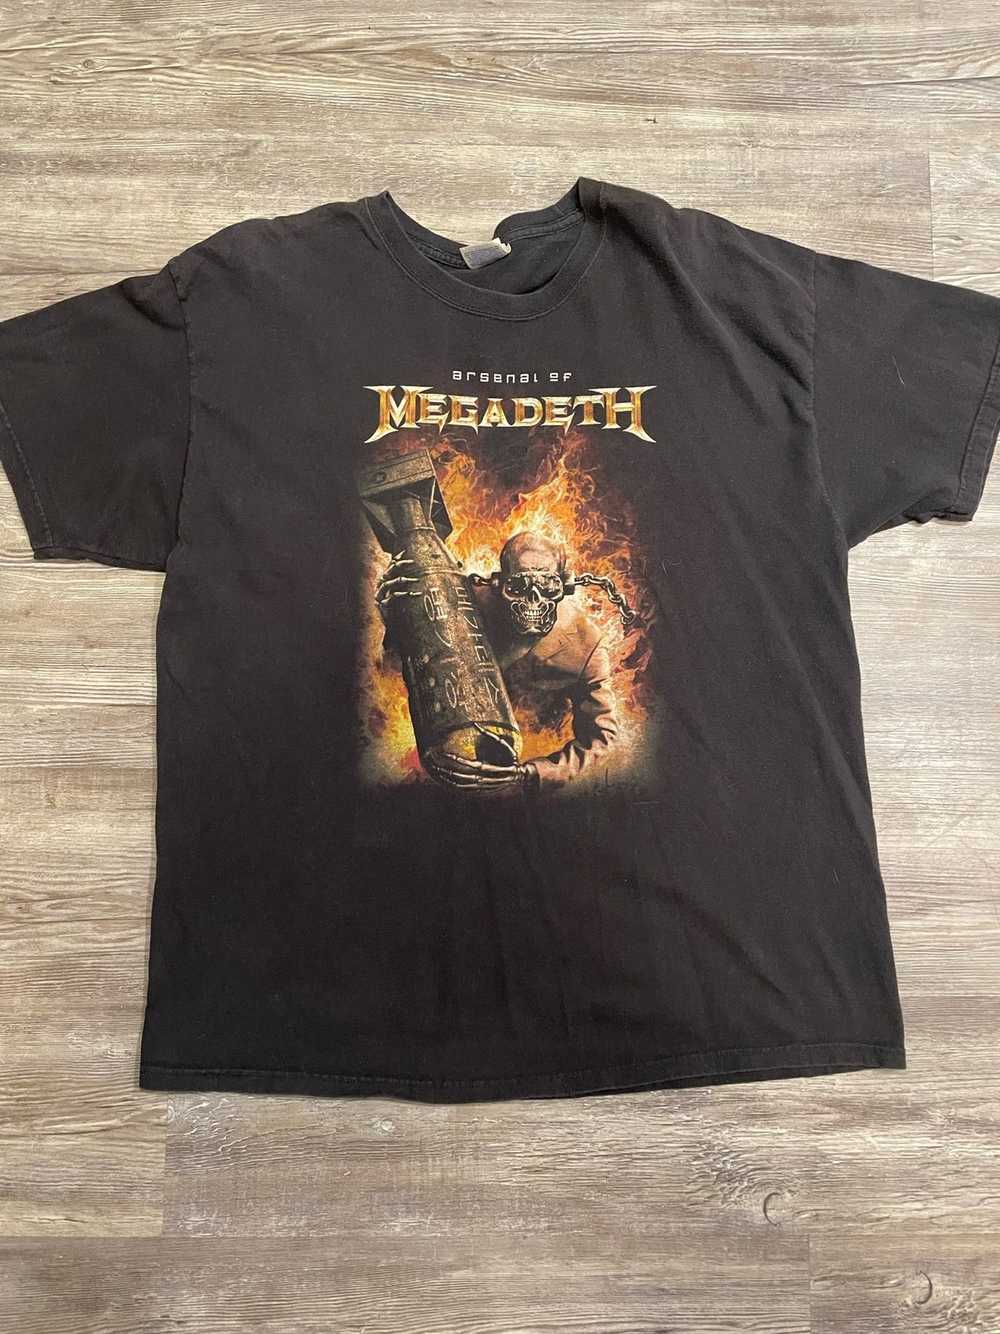 Vintage Vintage Arsenal Of Megadeath T-shirt - image 1